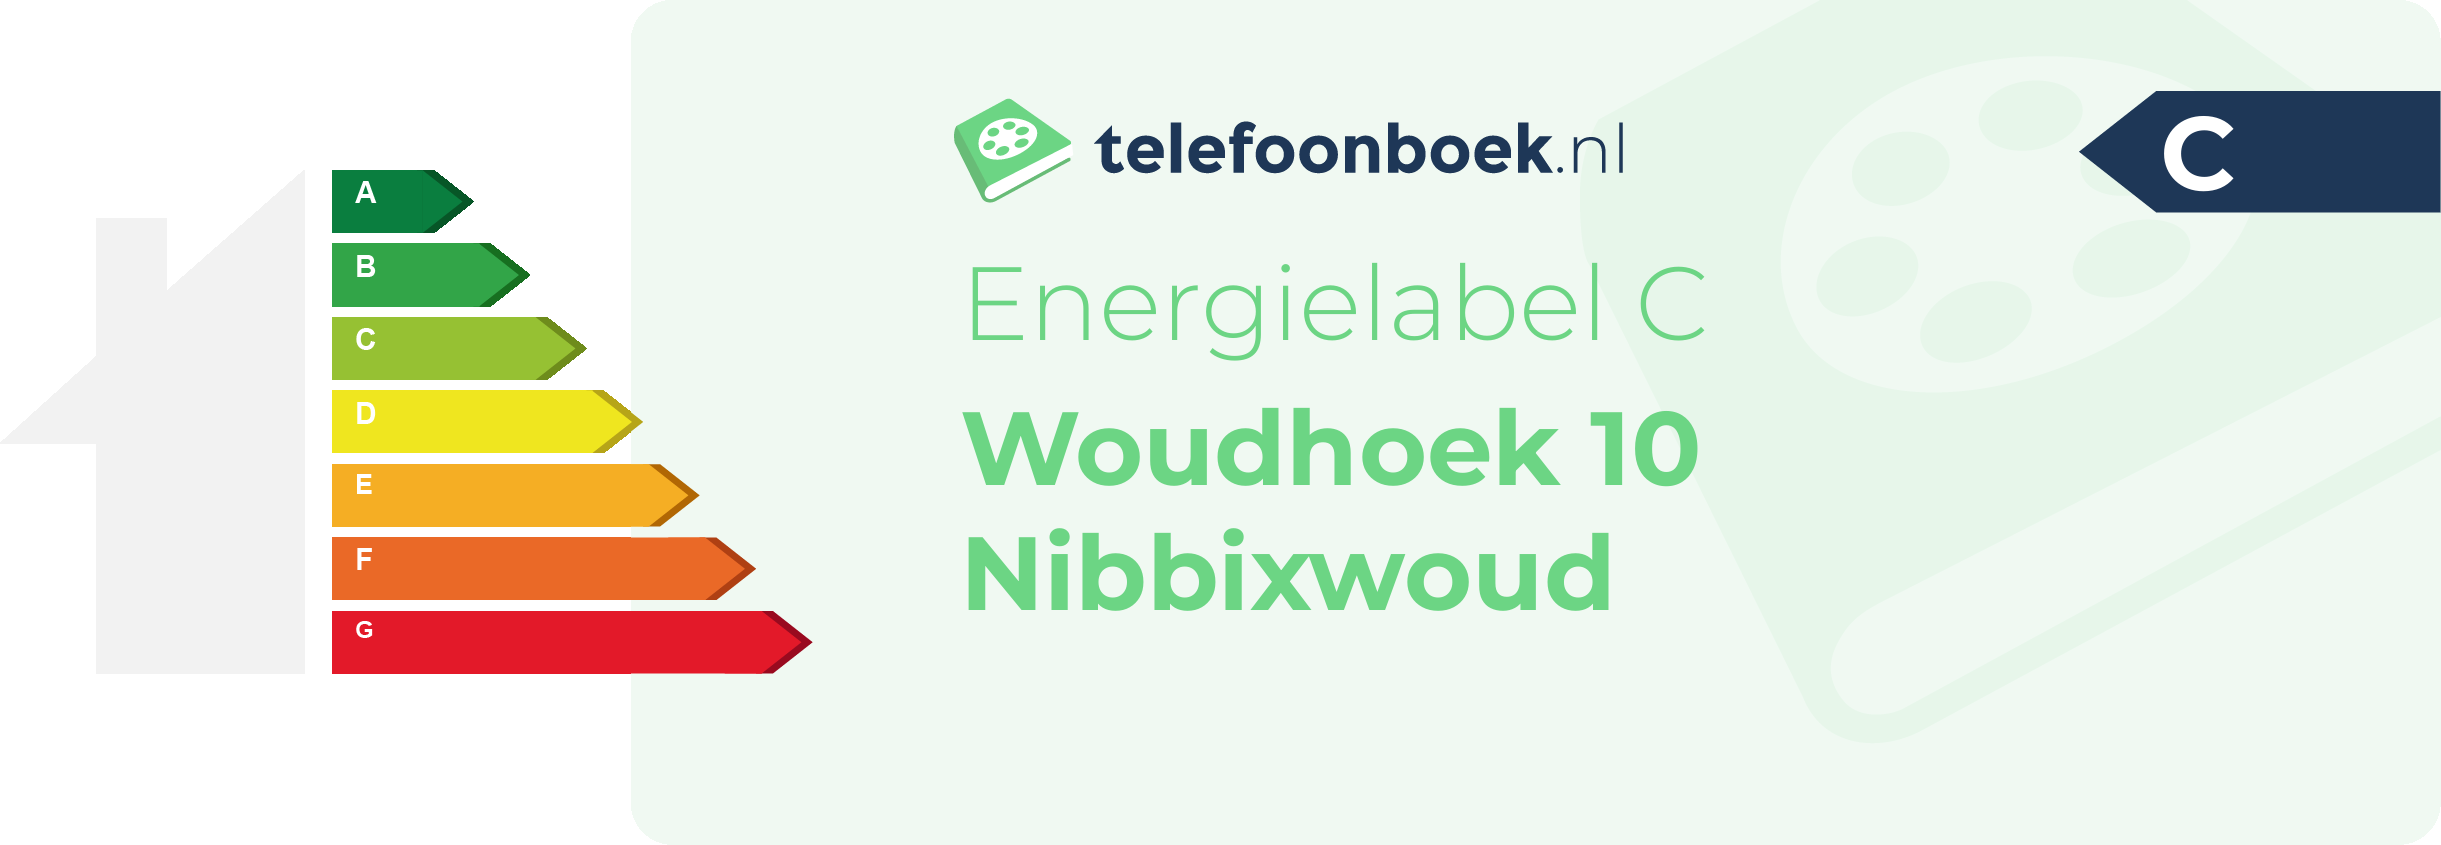 Energielabel Woudhoek 10 Nibbixwoud